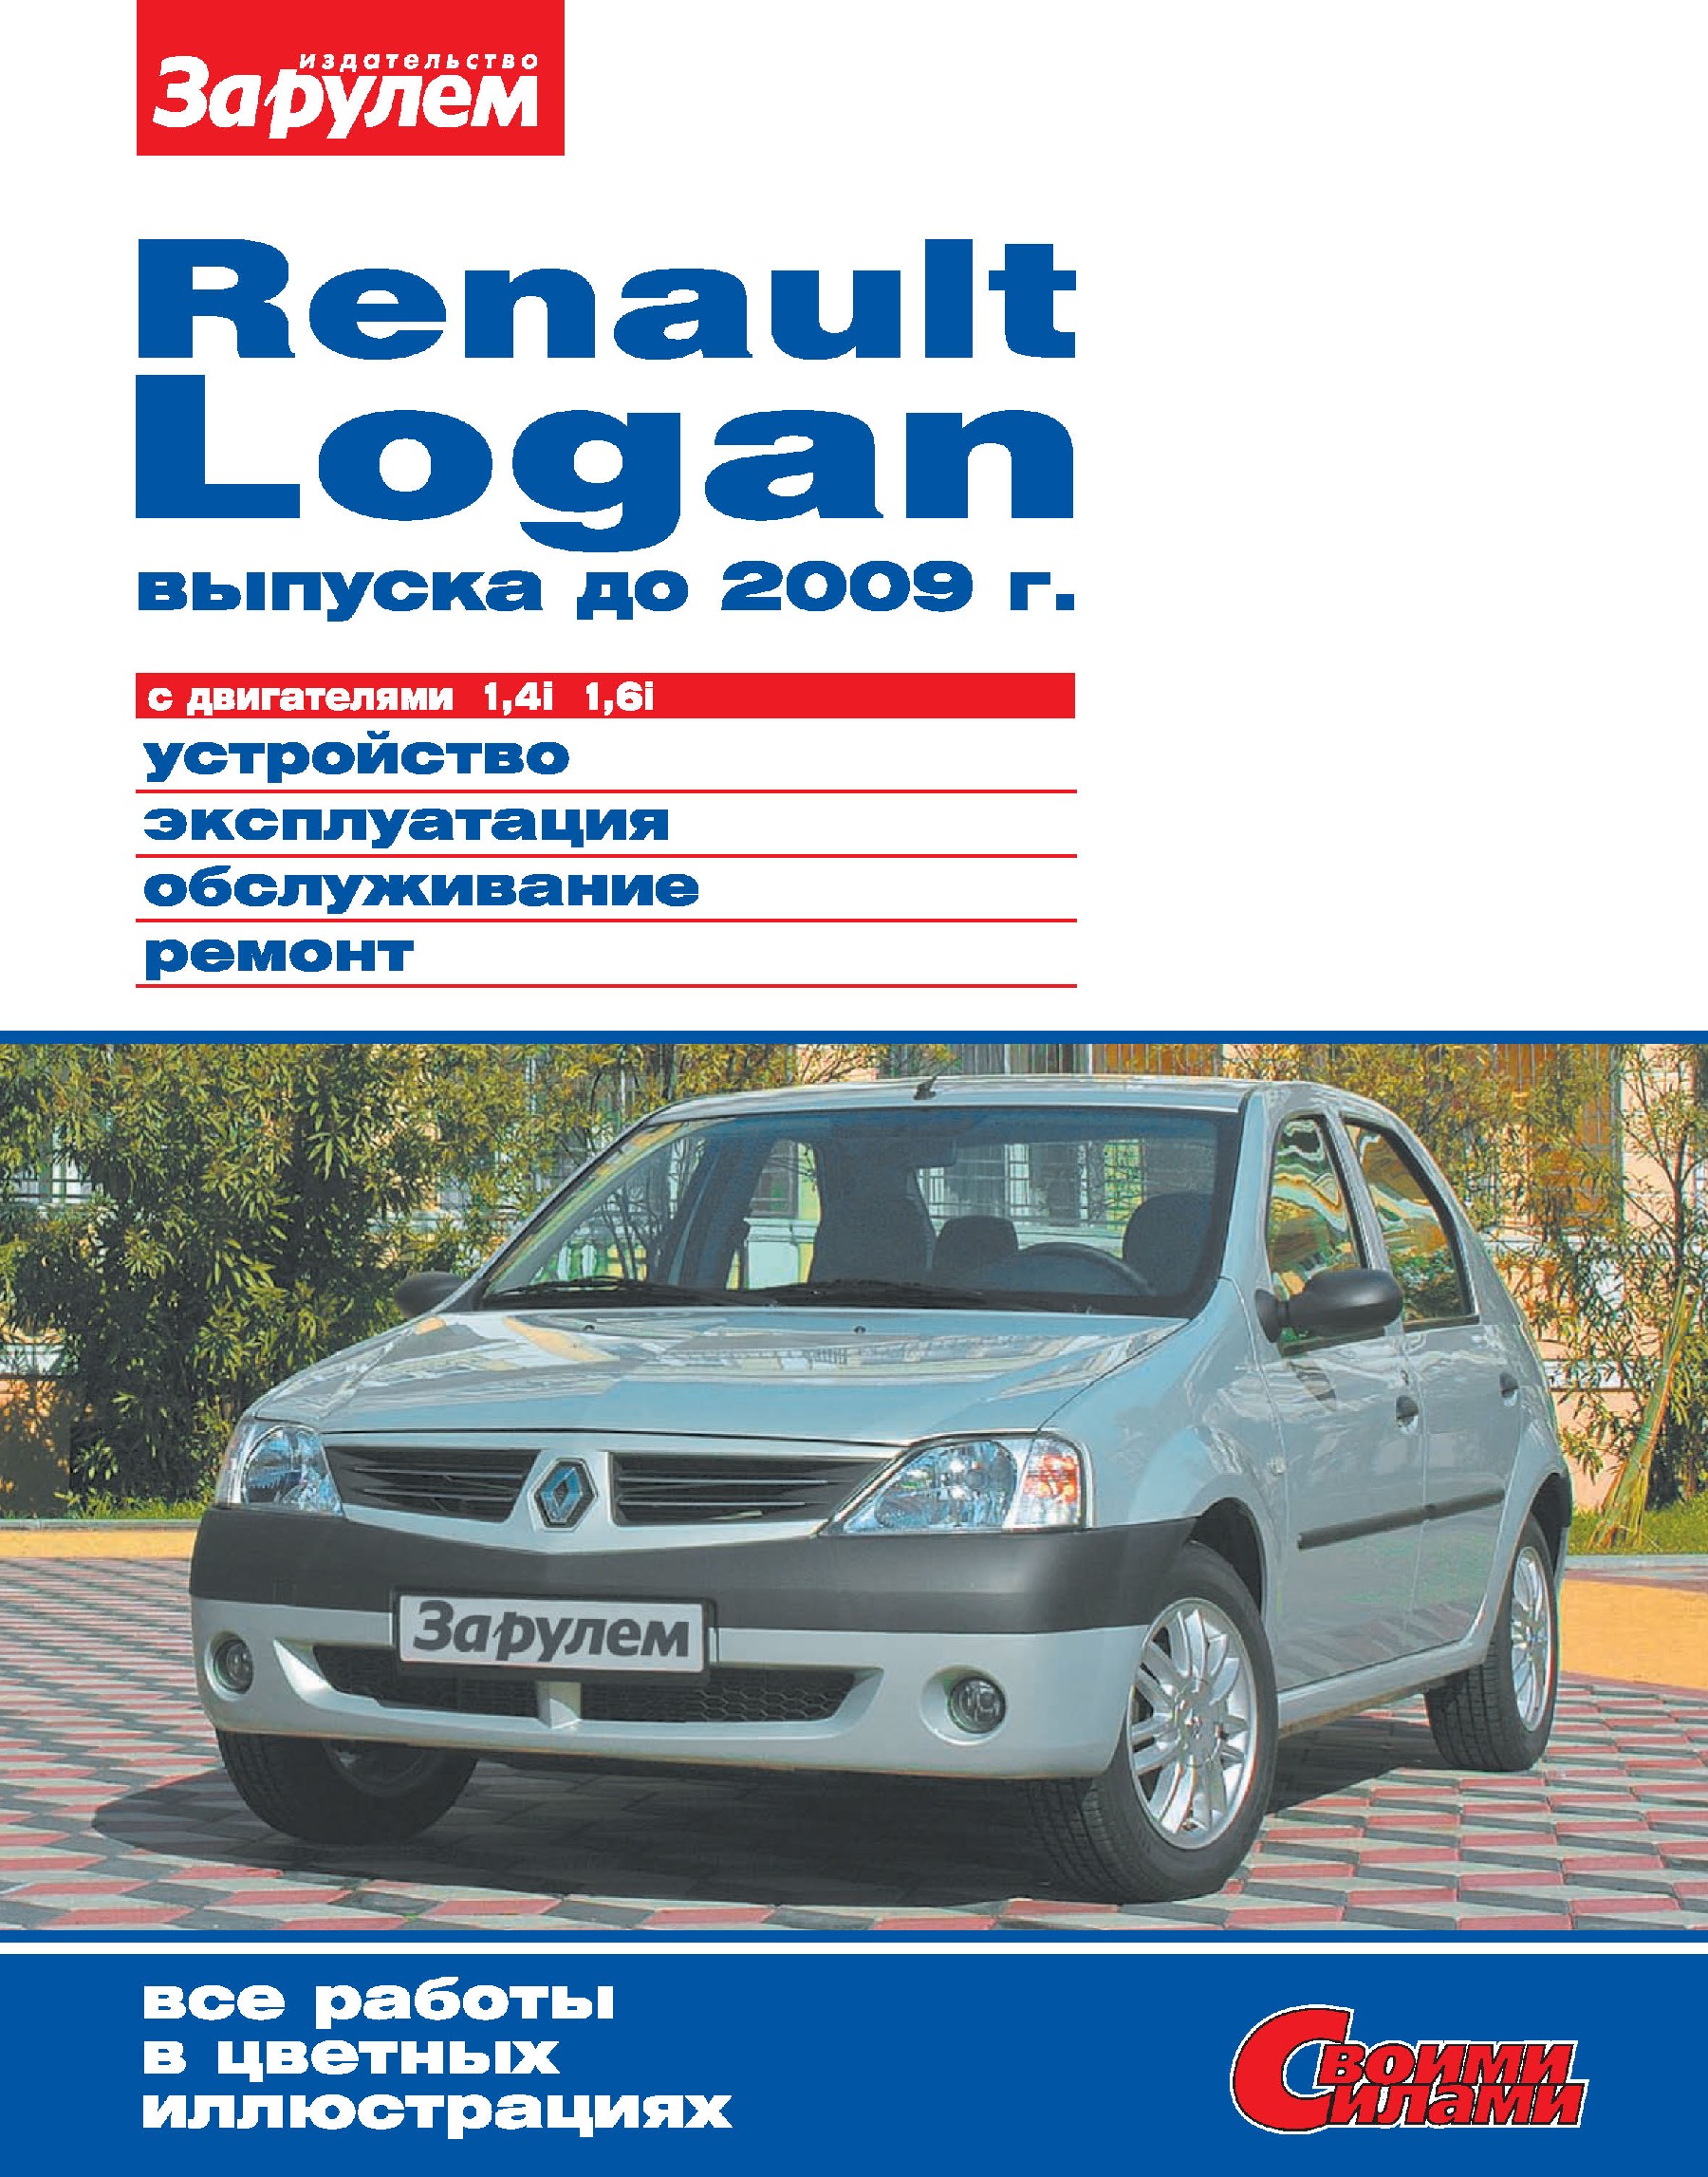 Renault Loganвыпуска до 2009 г. с двигателями 1,4i 1,6i. Устройство, эксплуатация, обслуживание, ремонт. Иллюстрированное руководство